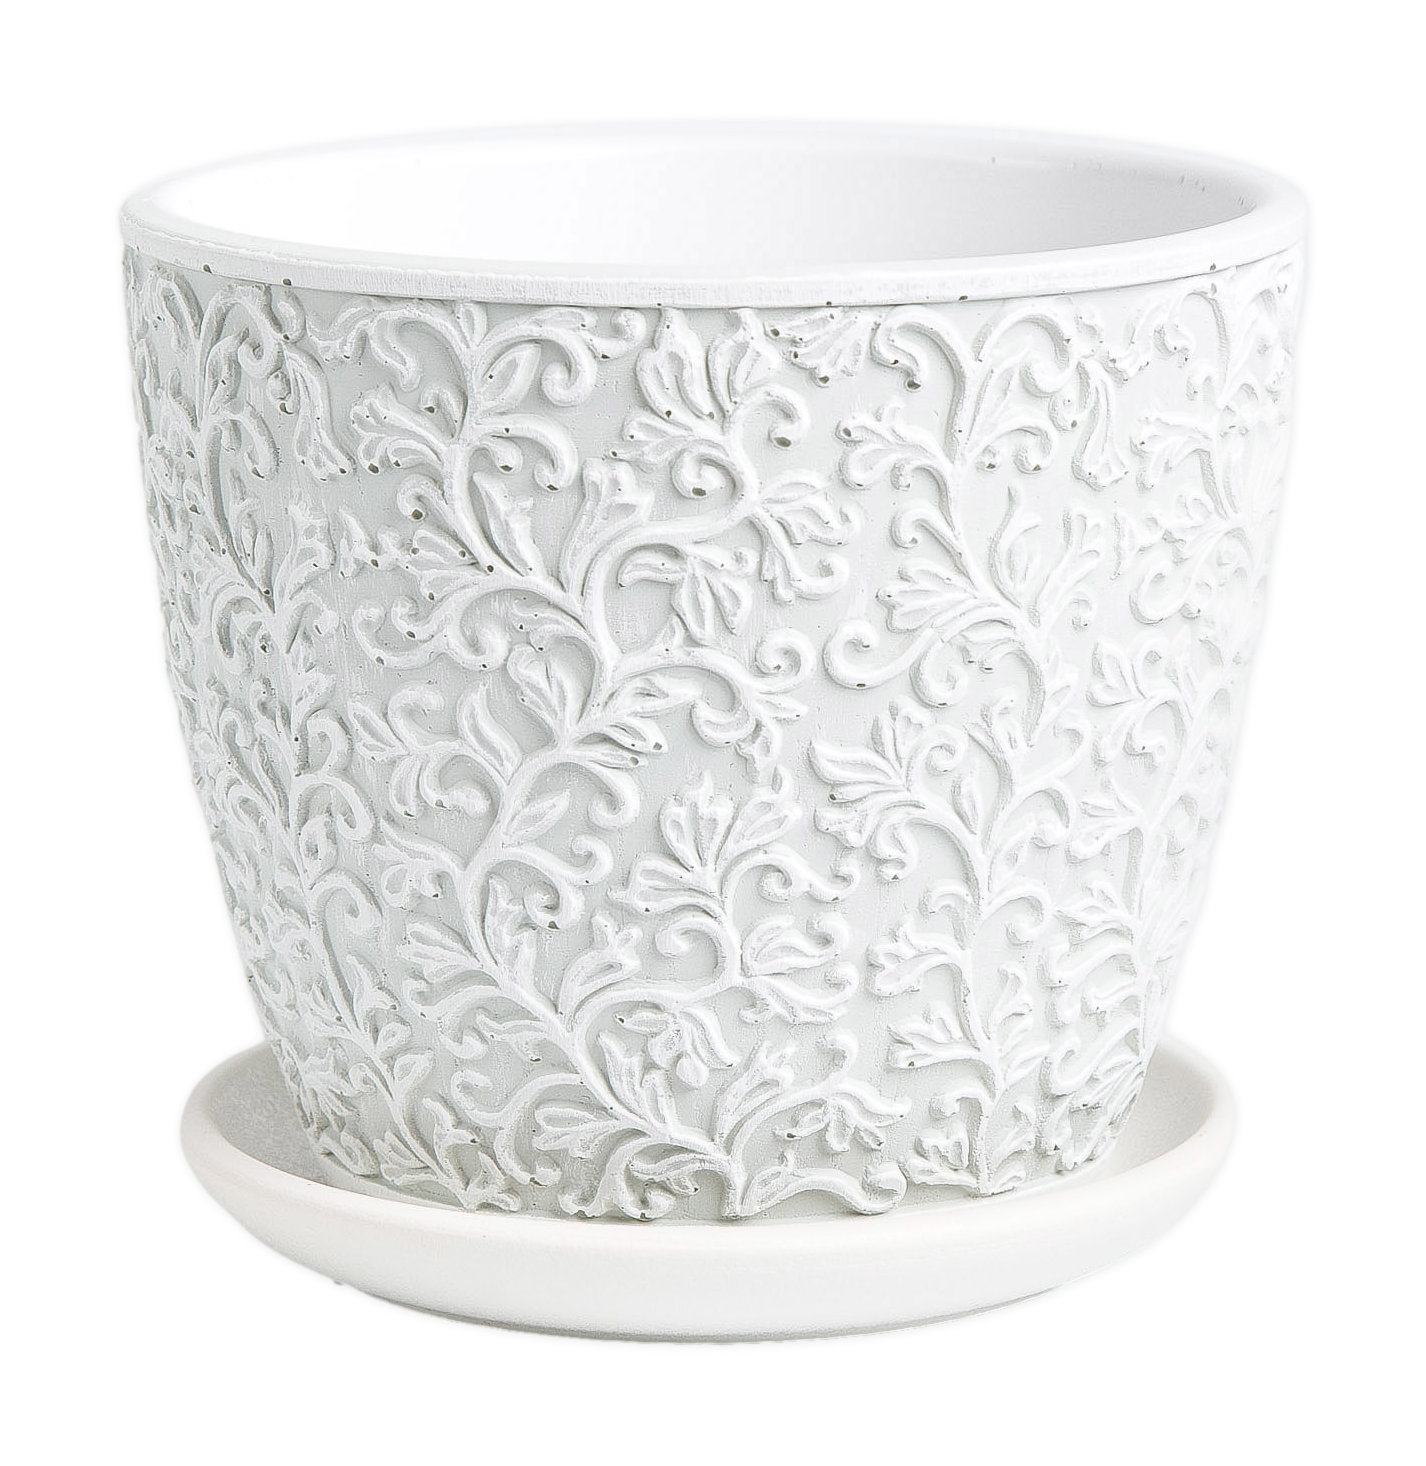 Цветочный горшок Miss Pots Орнамент КБ-Б2-156-46 1,31 л светло-серый 1 шт.